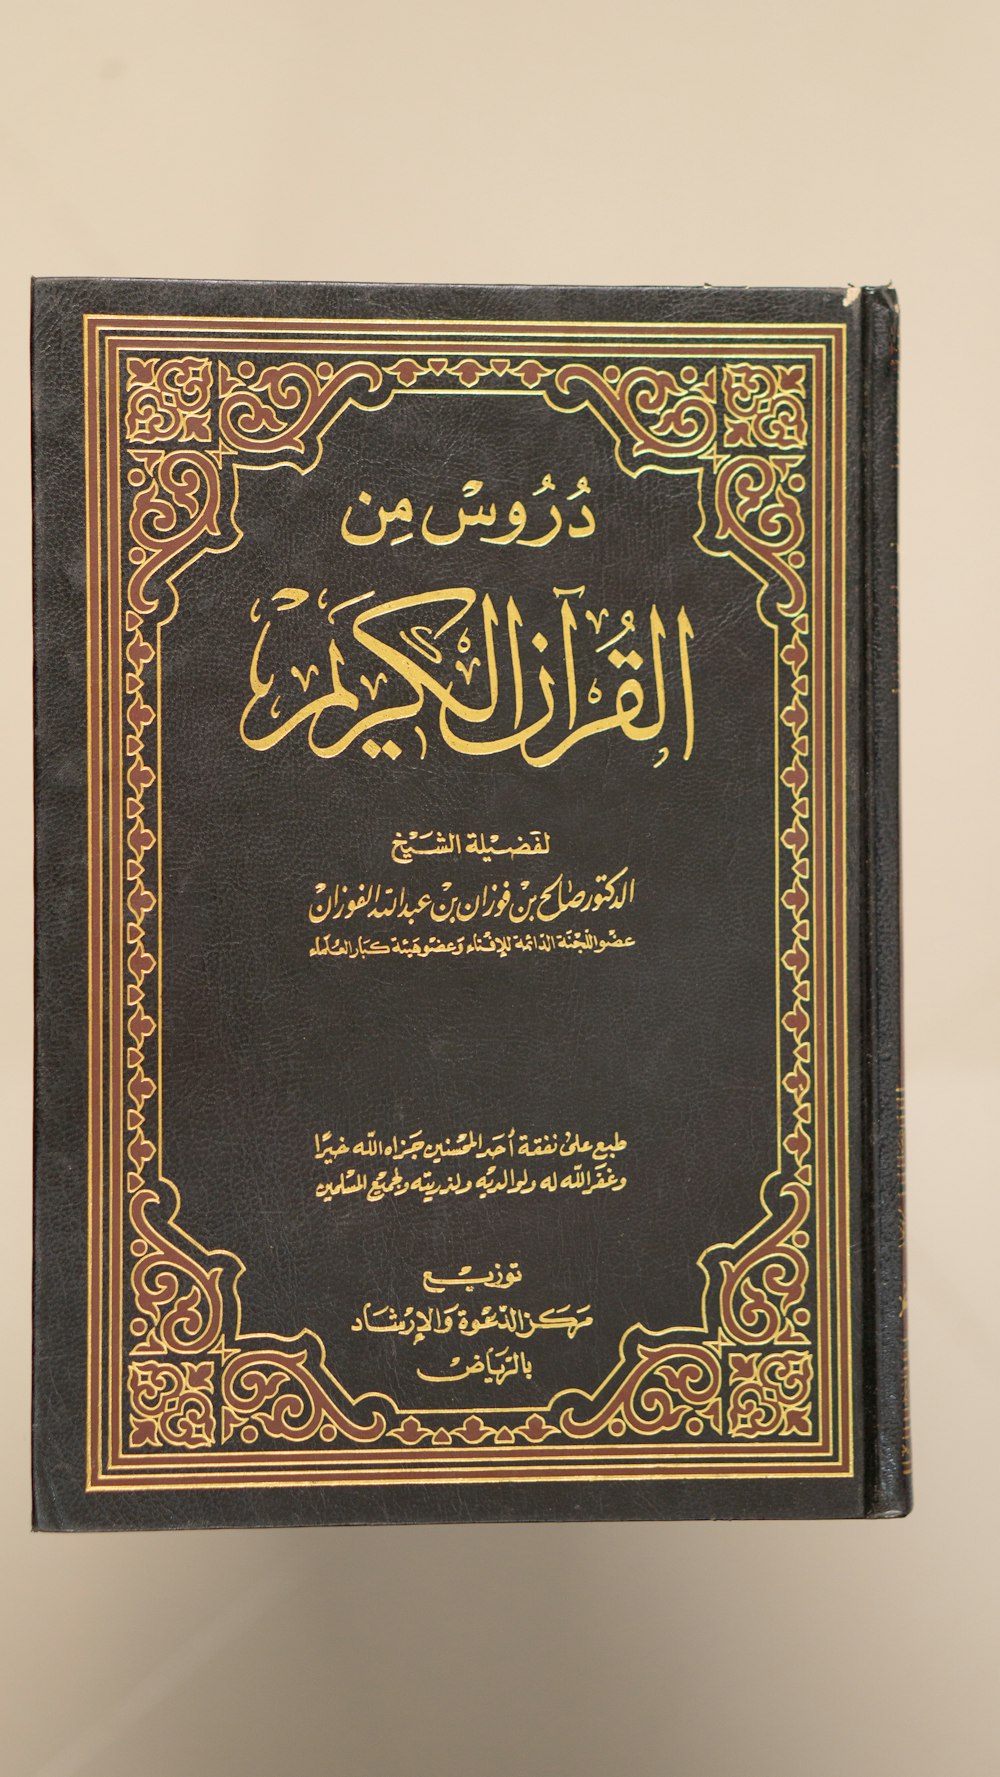 Ein Buch mit arabischer Schrift